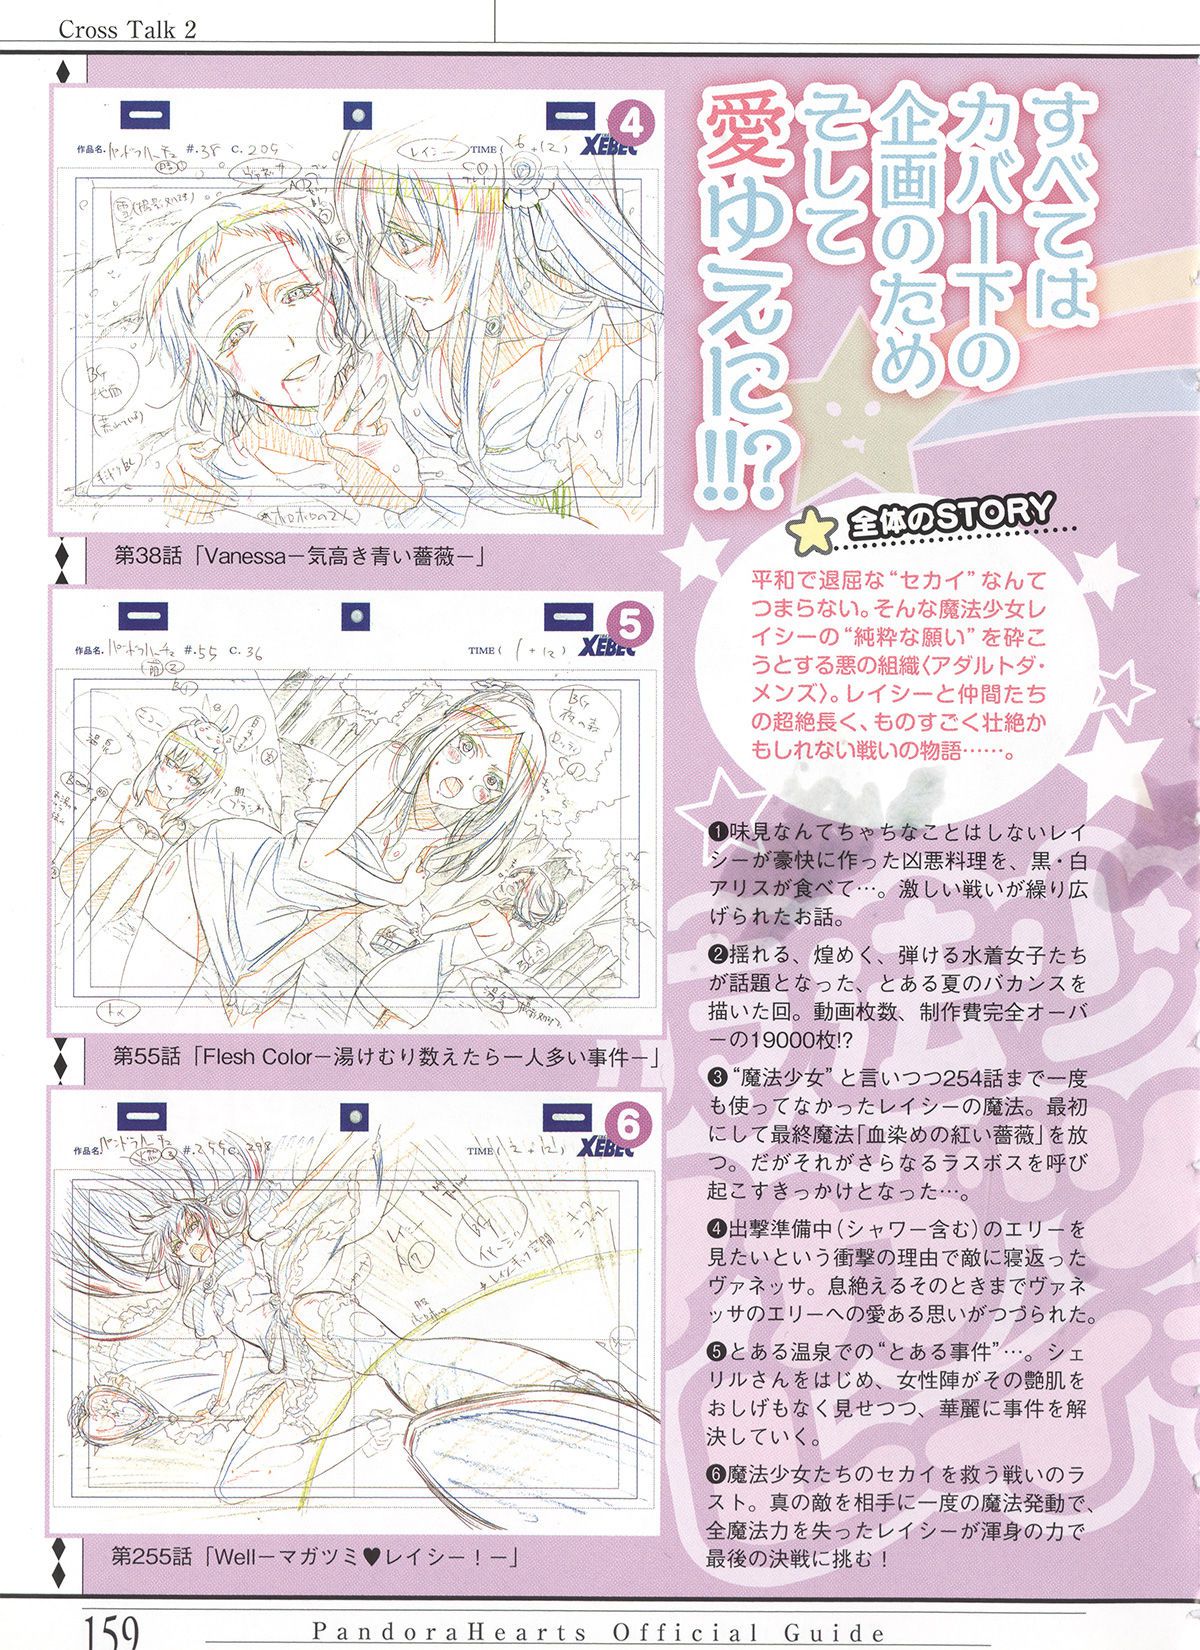 Pandora Hearts Guidebook 24+1: Last Dance パンドラハーツ オフィシャルガイド 24 + 1 ~Last Dance! 162